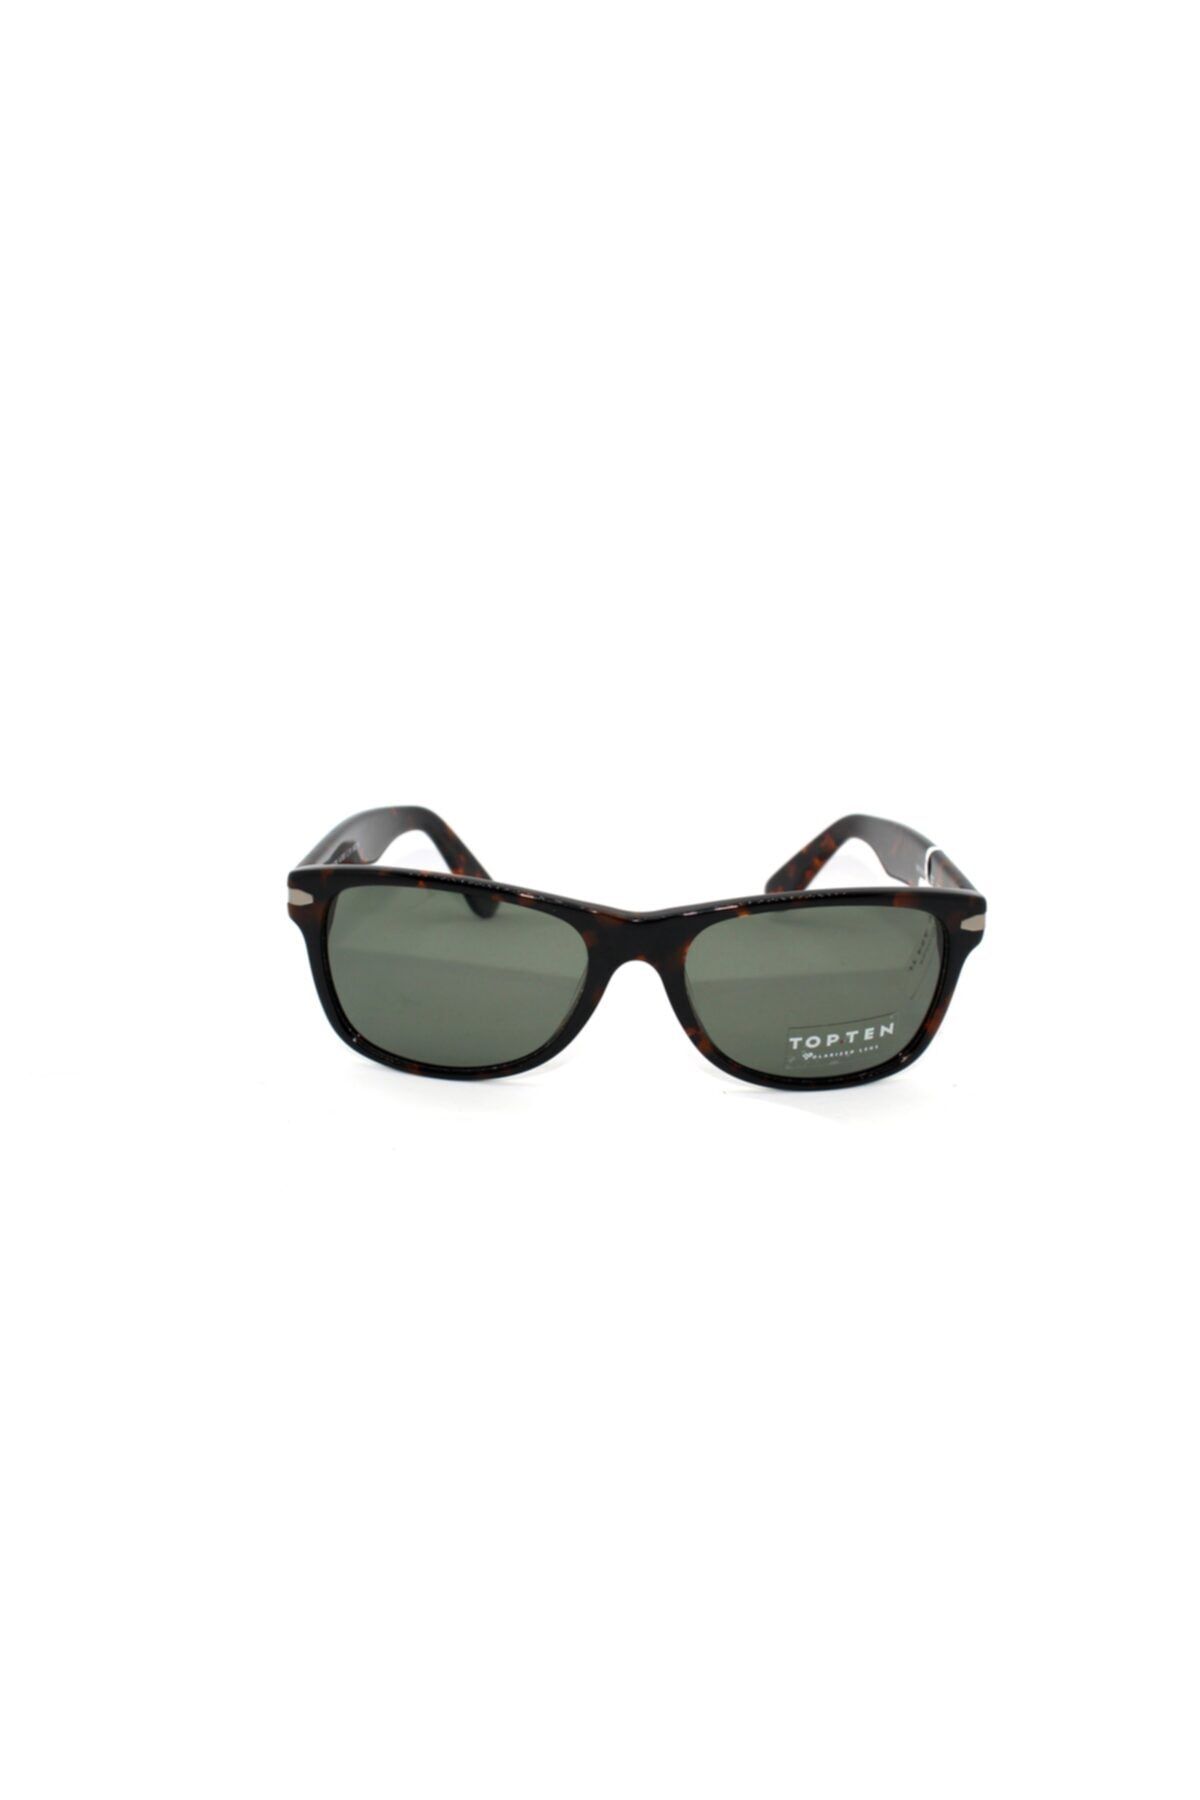 Topten Eyewear Kadın Güneş Gözlüğü M7020C1956